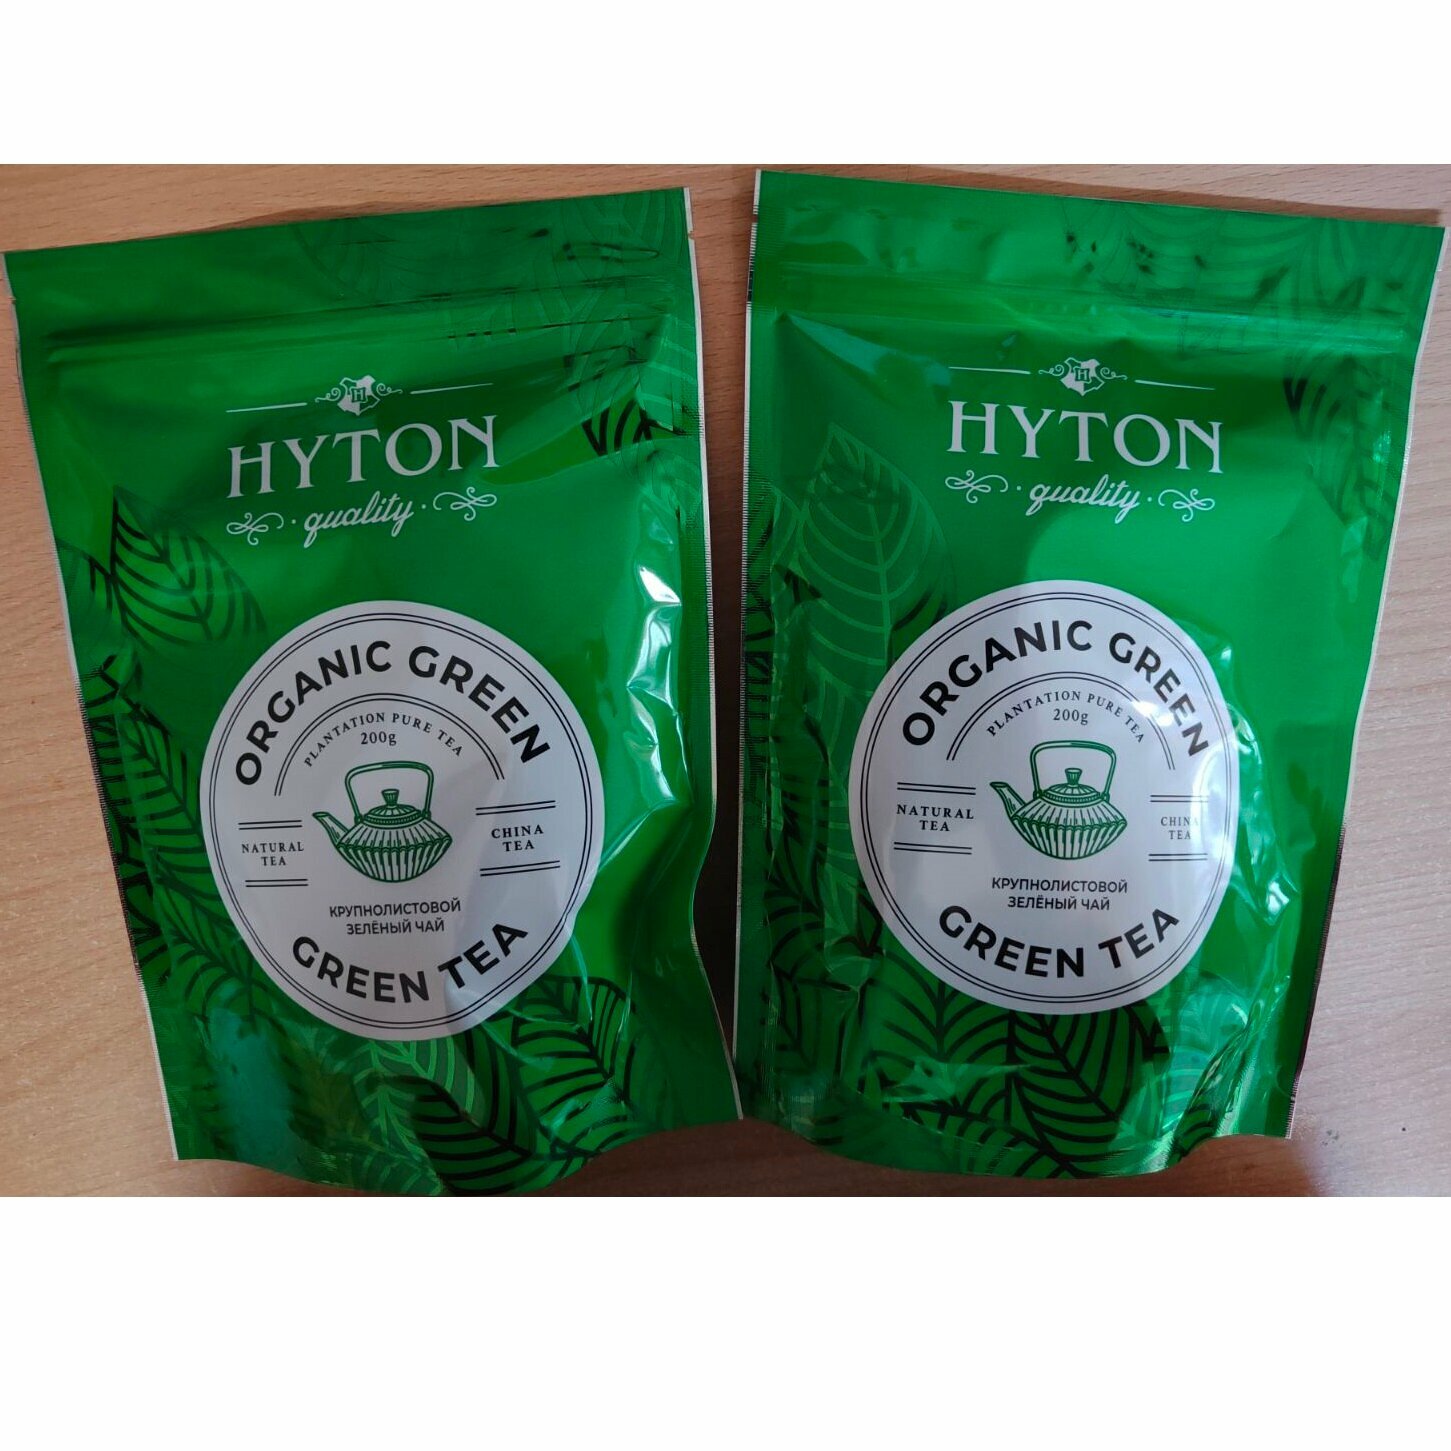 Чай HYTON зелёный китайский крупнолистовой. Набор из 2х пачек по 200г